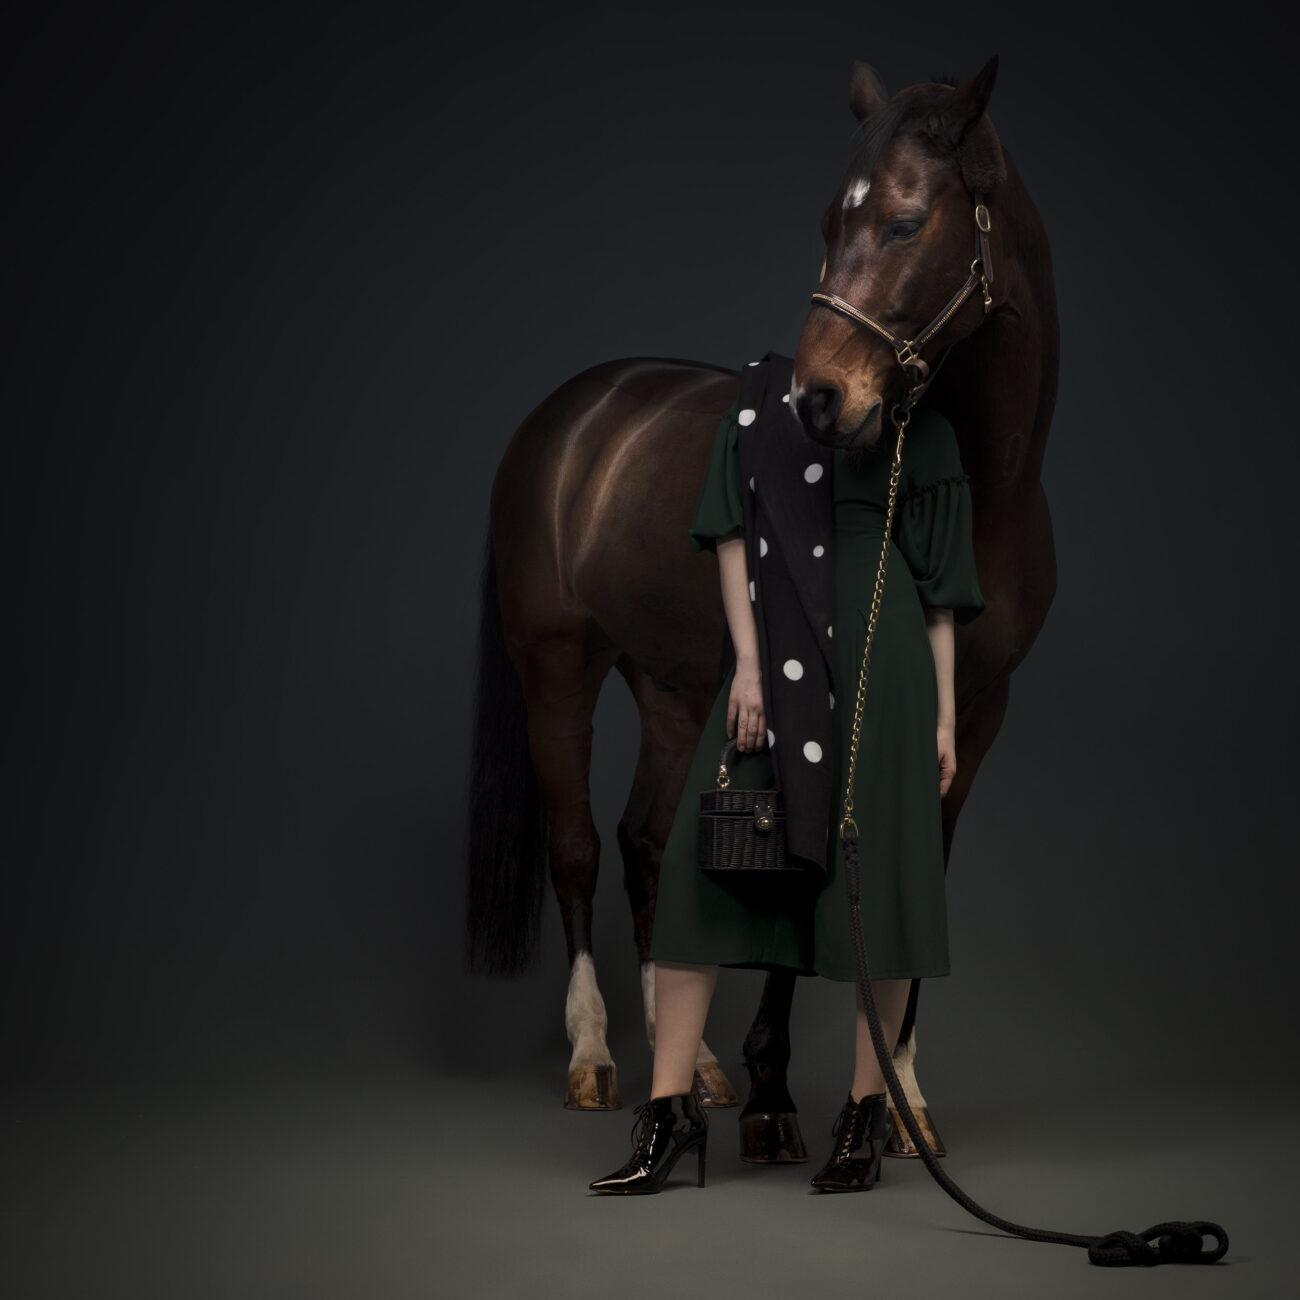 Editorial Photography | Serie Horse | Studioaufnahme mit Pferd und Model 005